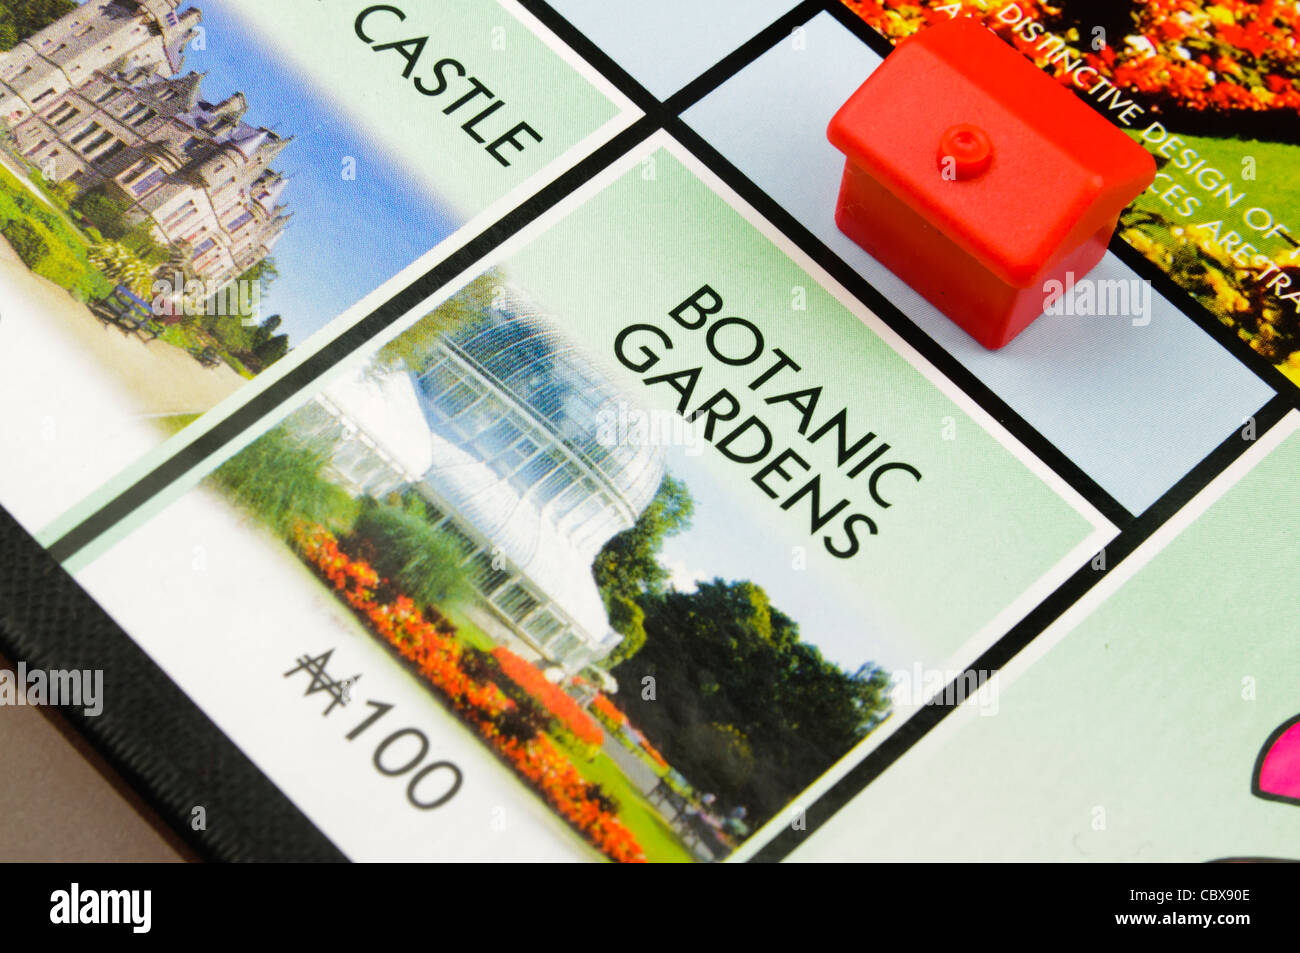 Belfast-Monopol: Bau eines Hotels am Botanischen Garten Stockfoto